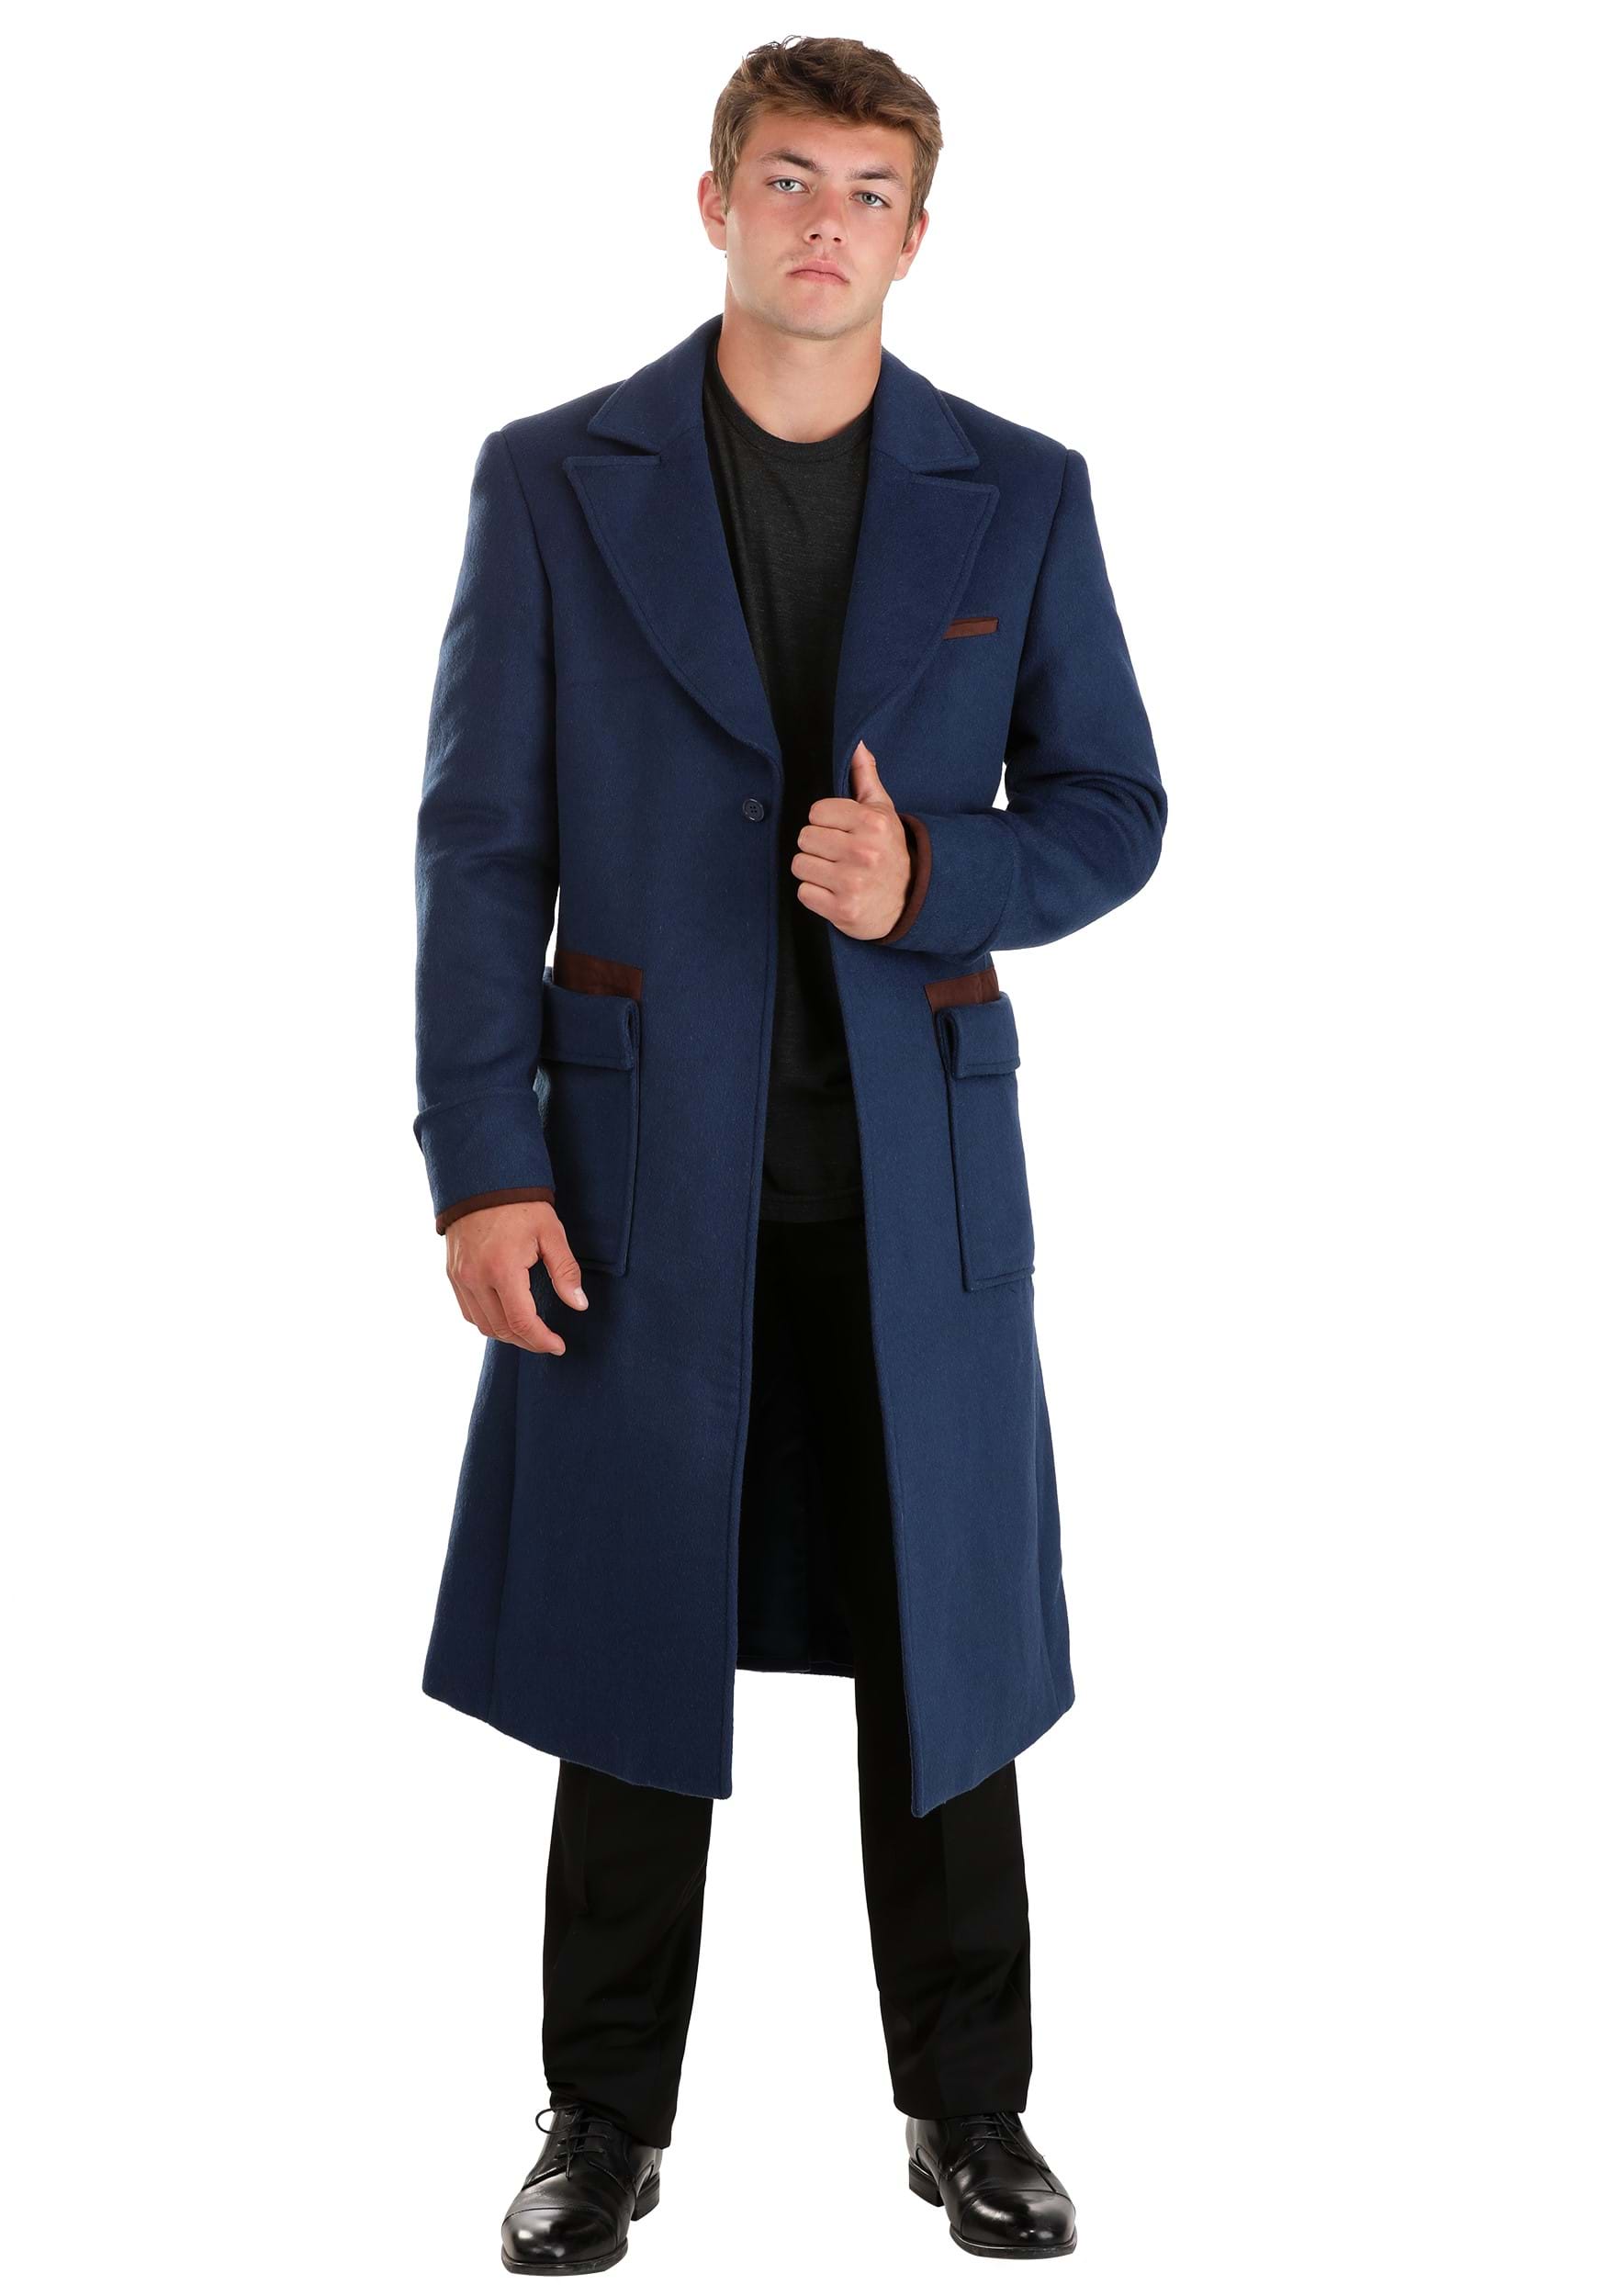 Image of FUN Wear Newt Scamander Men's Jacket